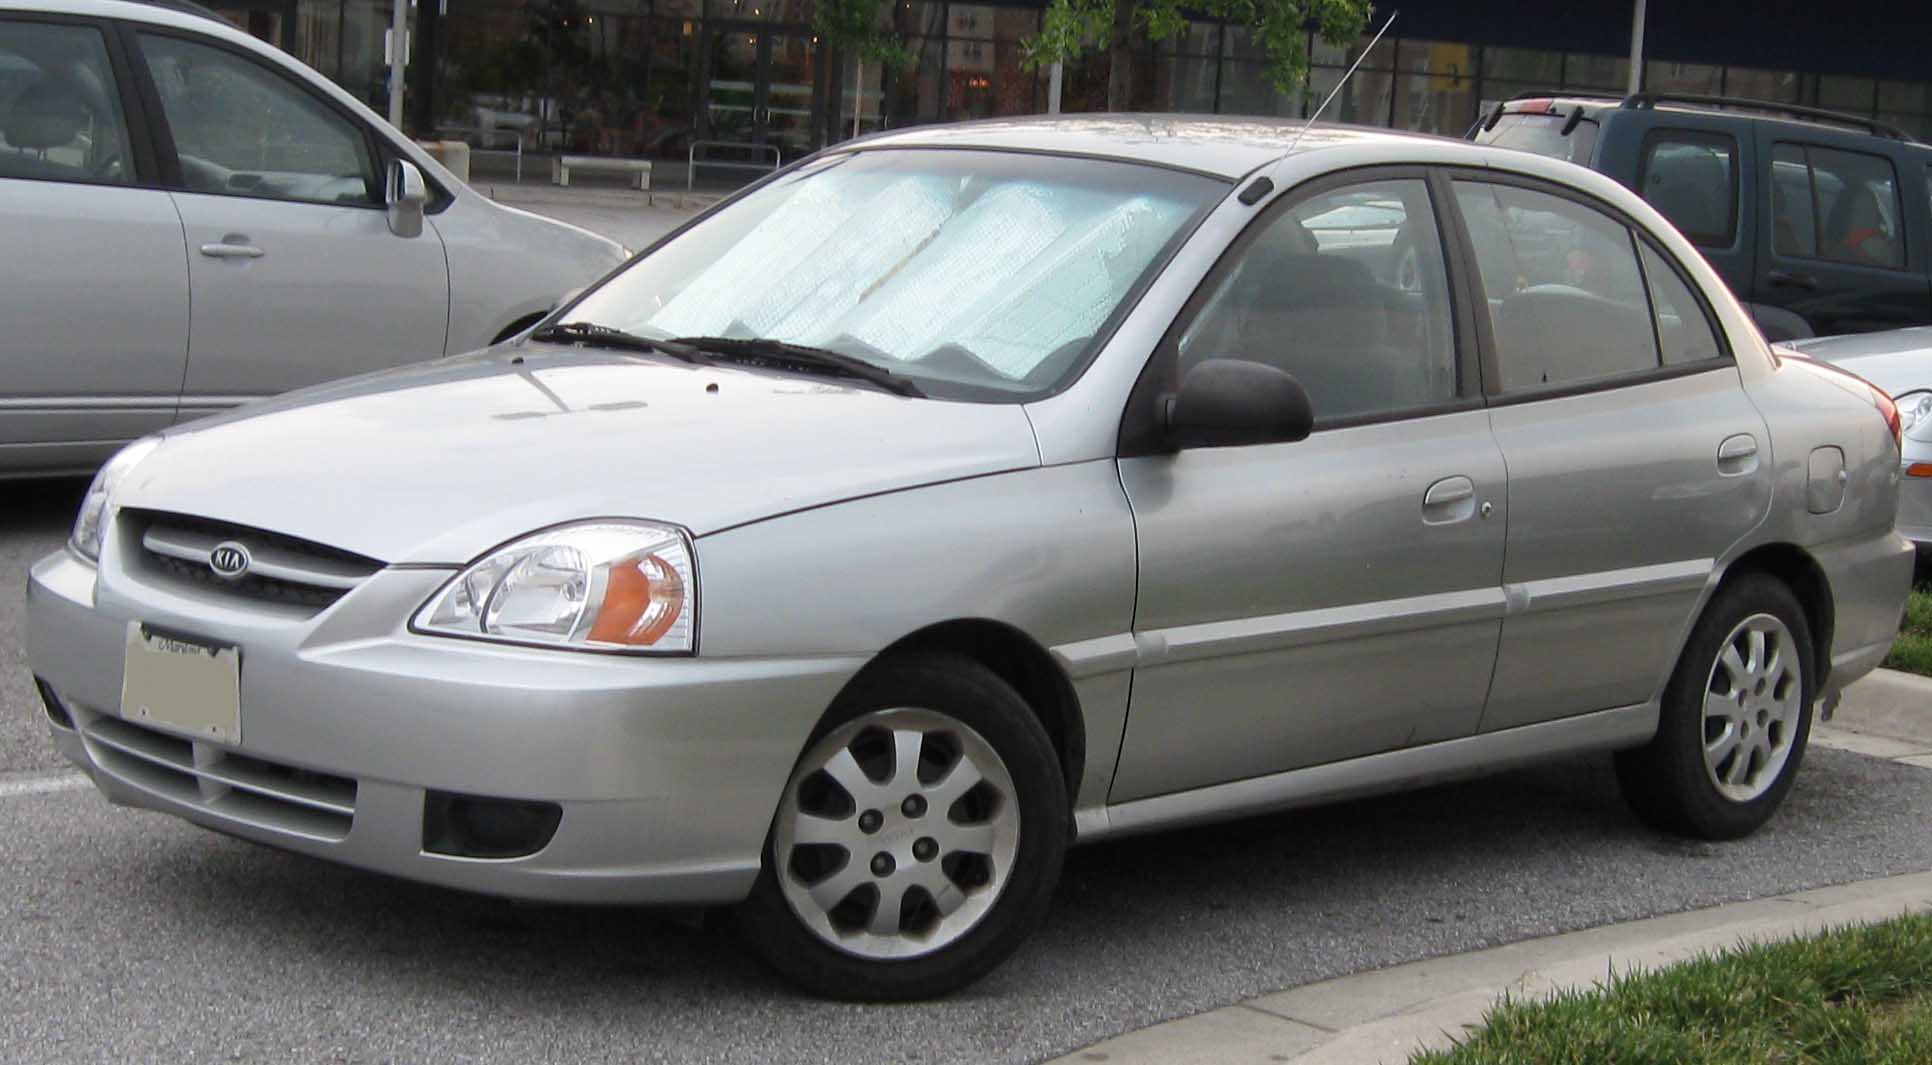 File:2003-2005 Kia Rio sedan.jpg - Wikimedia Commons